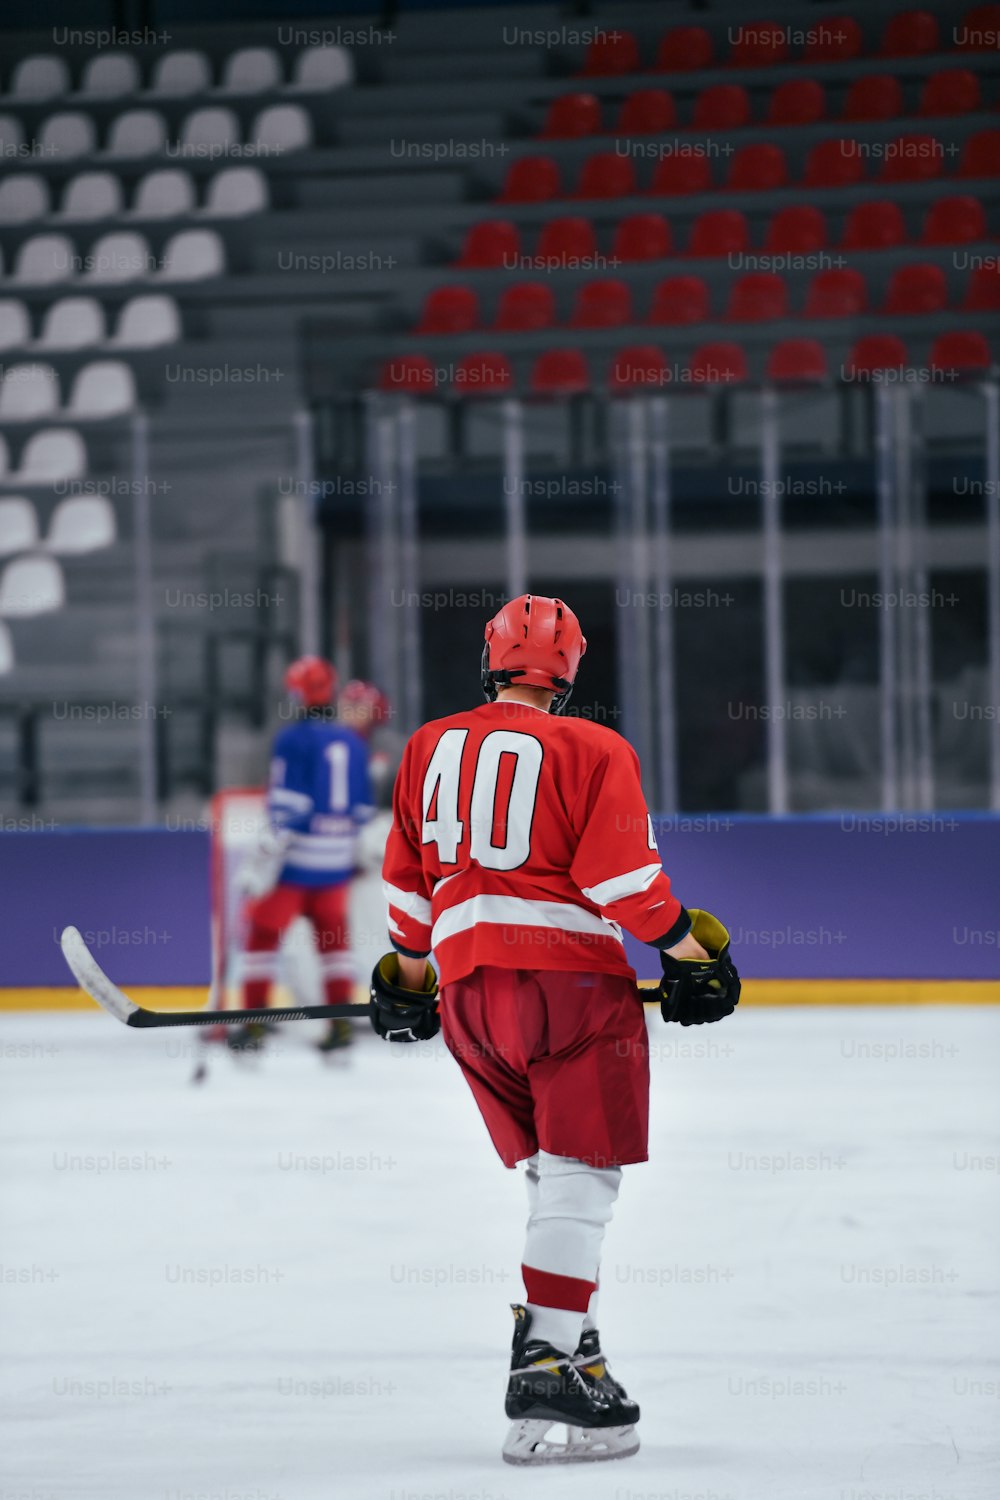 Ein Eishockeyspieler in roter Uniform auf dem Eis